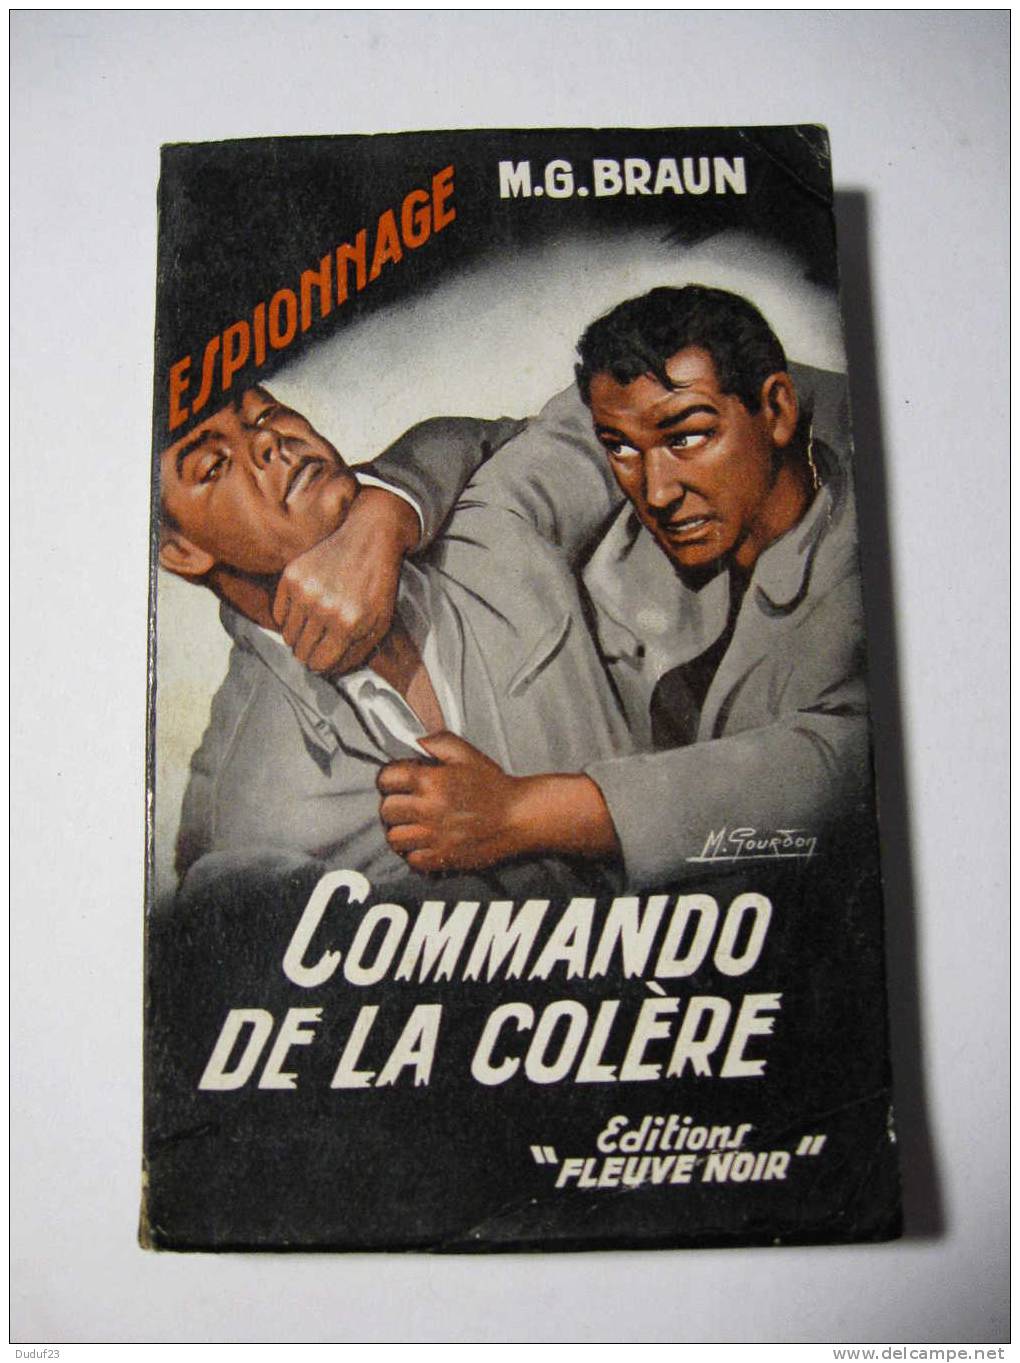 M.G. BRAUN  - COMMANDO DE LA COLERE - FLEUVE NOIR ESPIONNAGE N° 124  - EO 1957 - Couv Michel GOURDON - Fleuve Noir